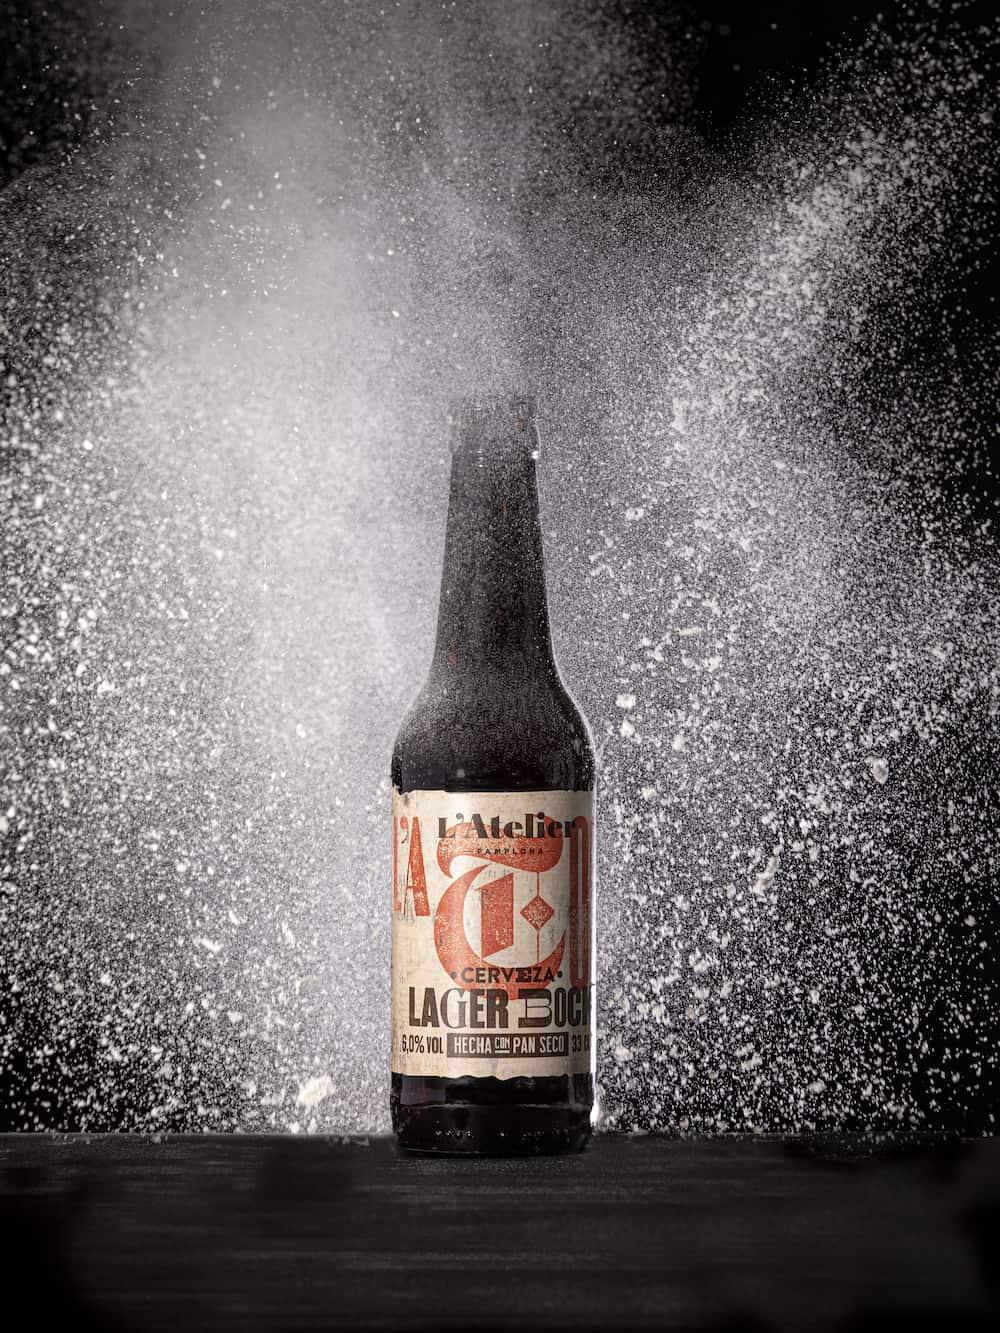 Imagen de una cerveza y detalle del diseño de la etiqueta de Cervezas L'Atelier con la tipografía corporativa Drunken Master